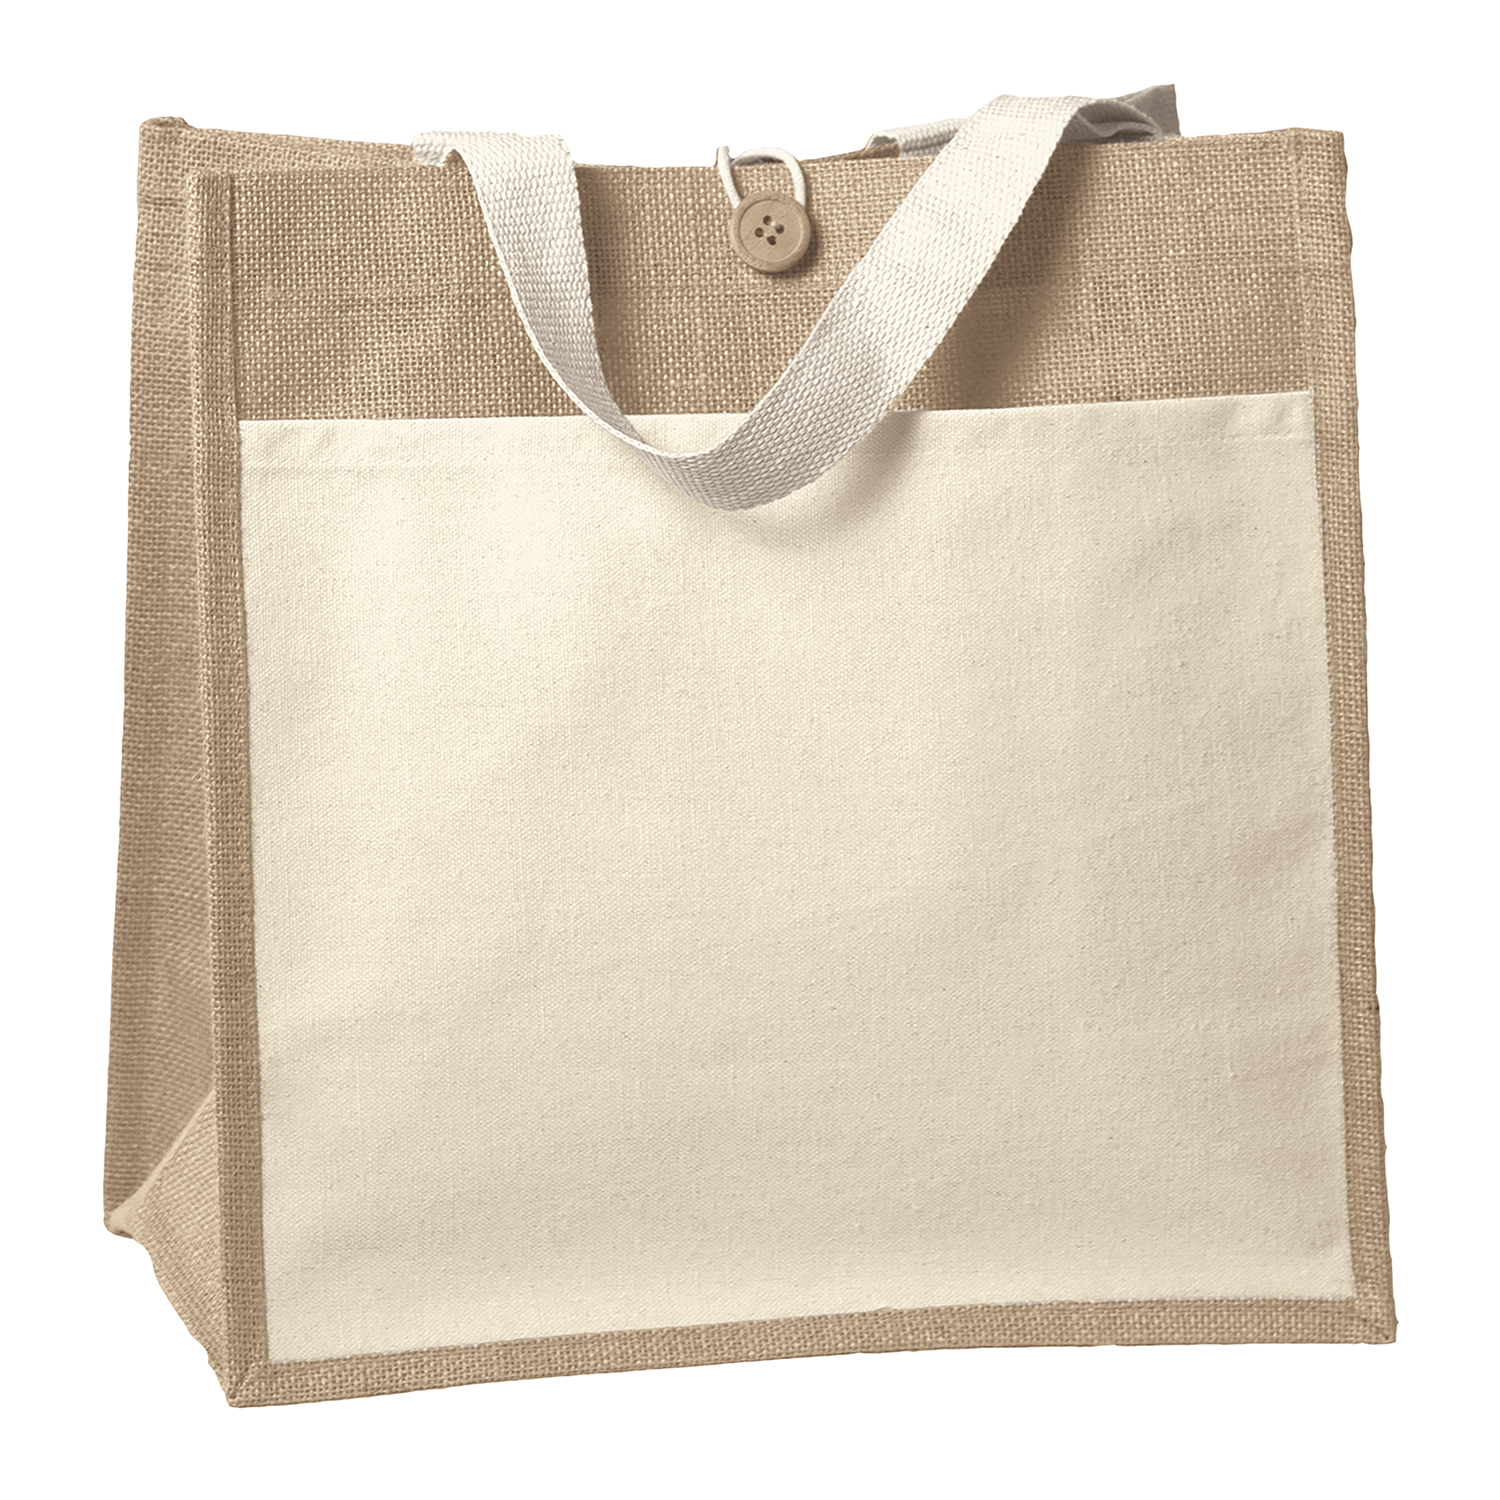 Bag Makers 40IZ1414 - Custom Printed Reusable Tote Bag